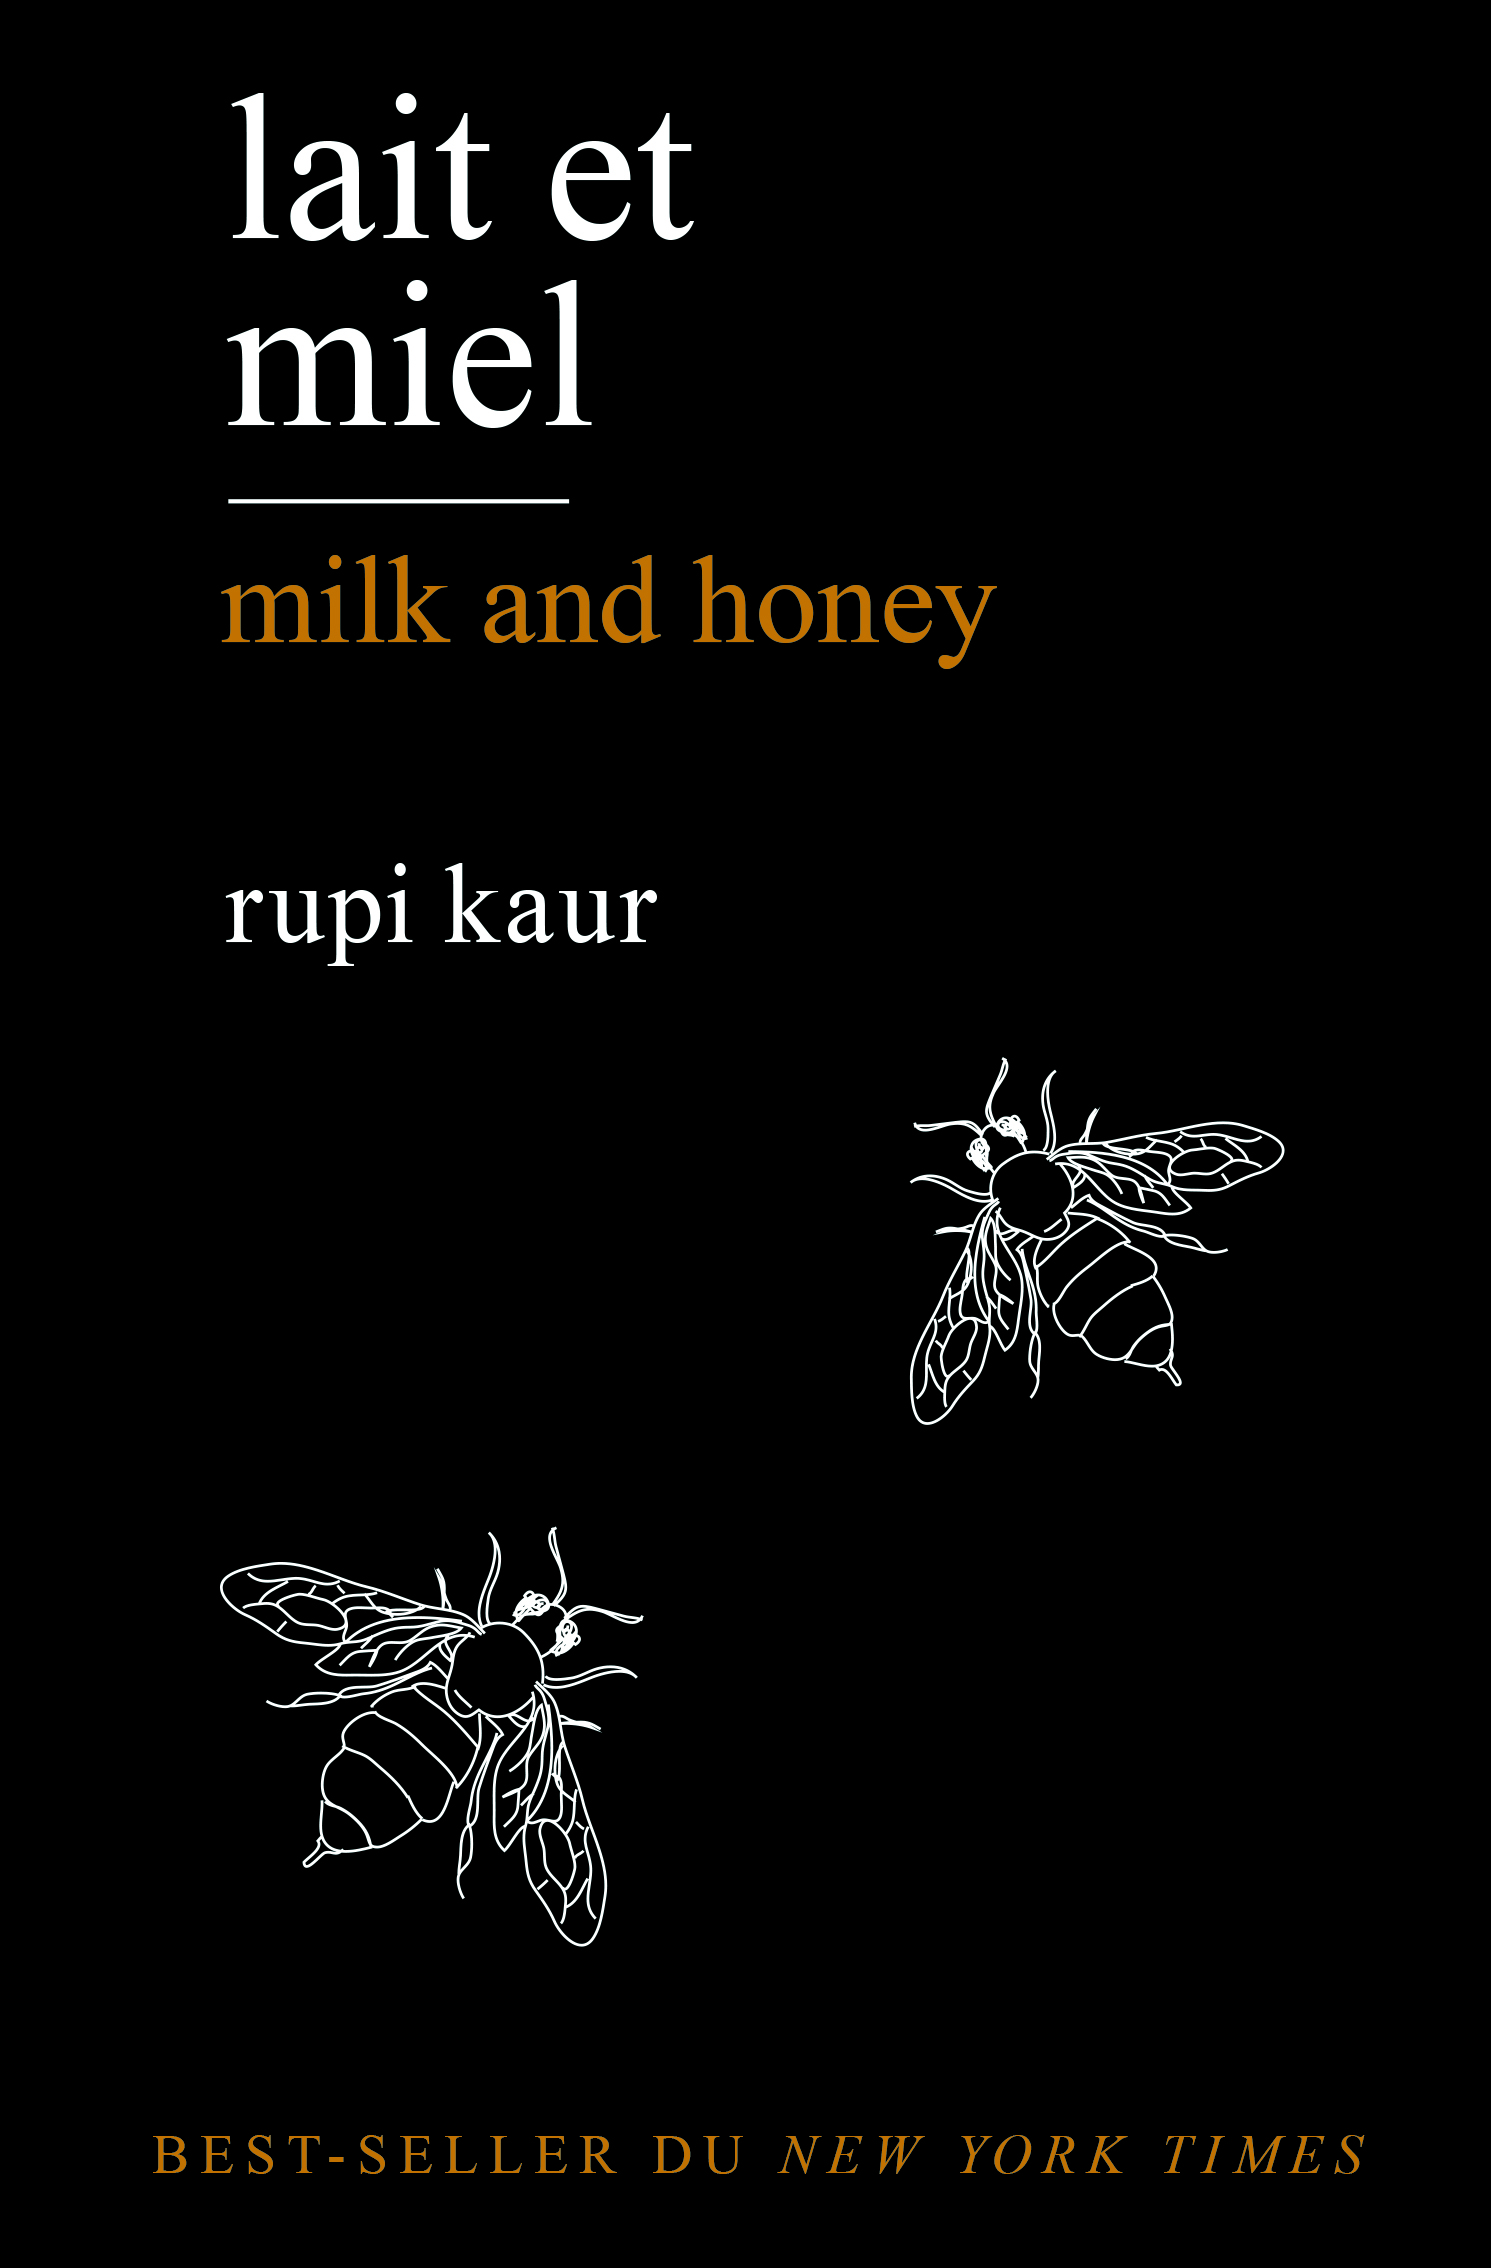 Lait et Miel, de Rupi Kaur, un exemple de poésie populaire au XXIe siècle  - L'École des Lettres - Revue pédagogique, littéraire et culturelle